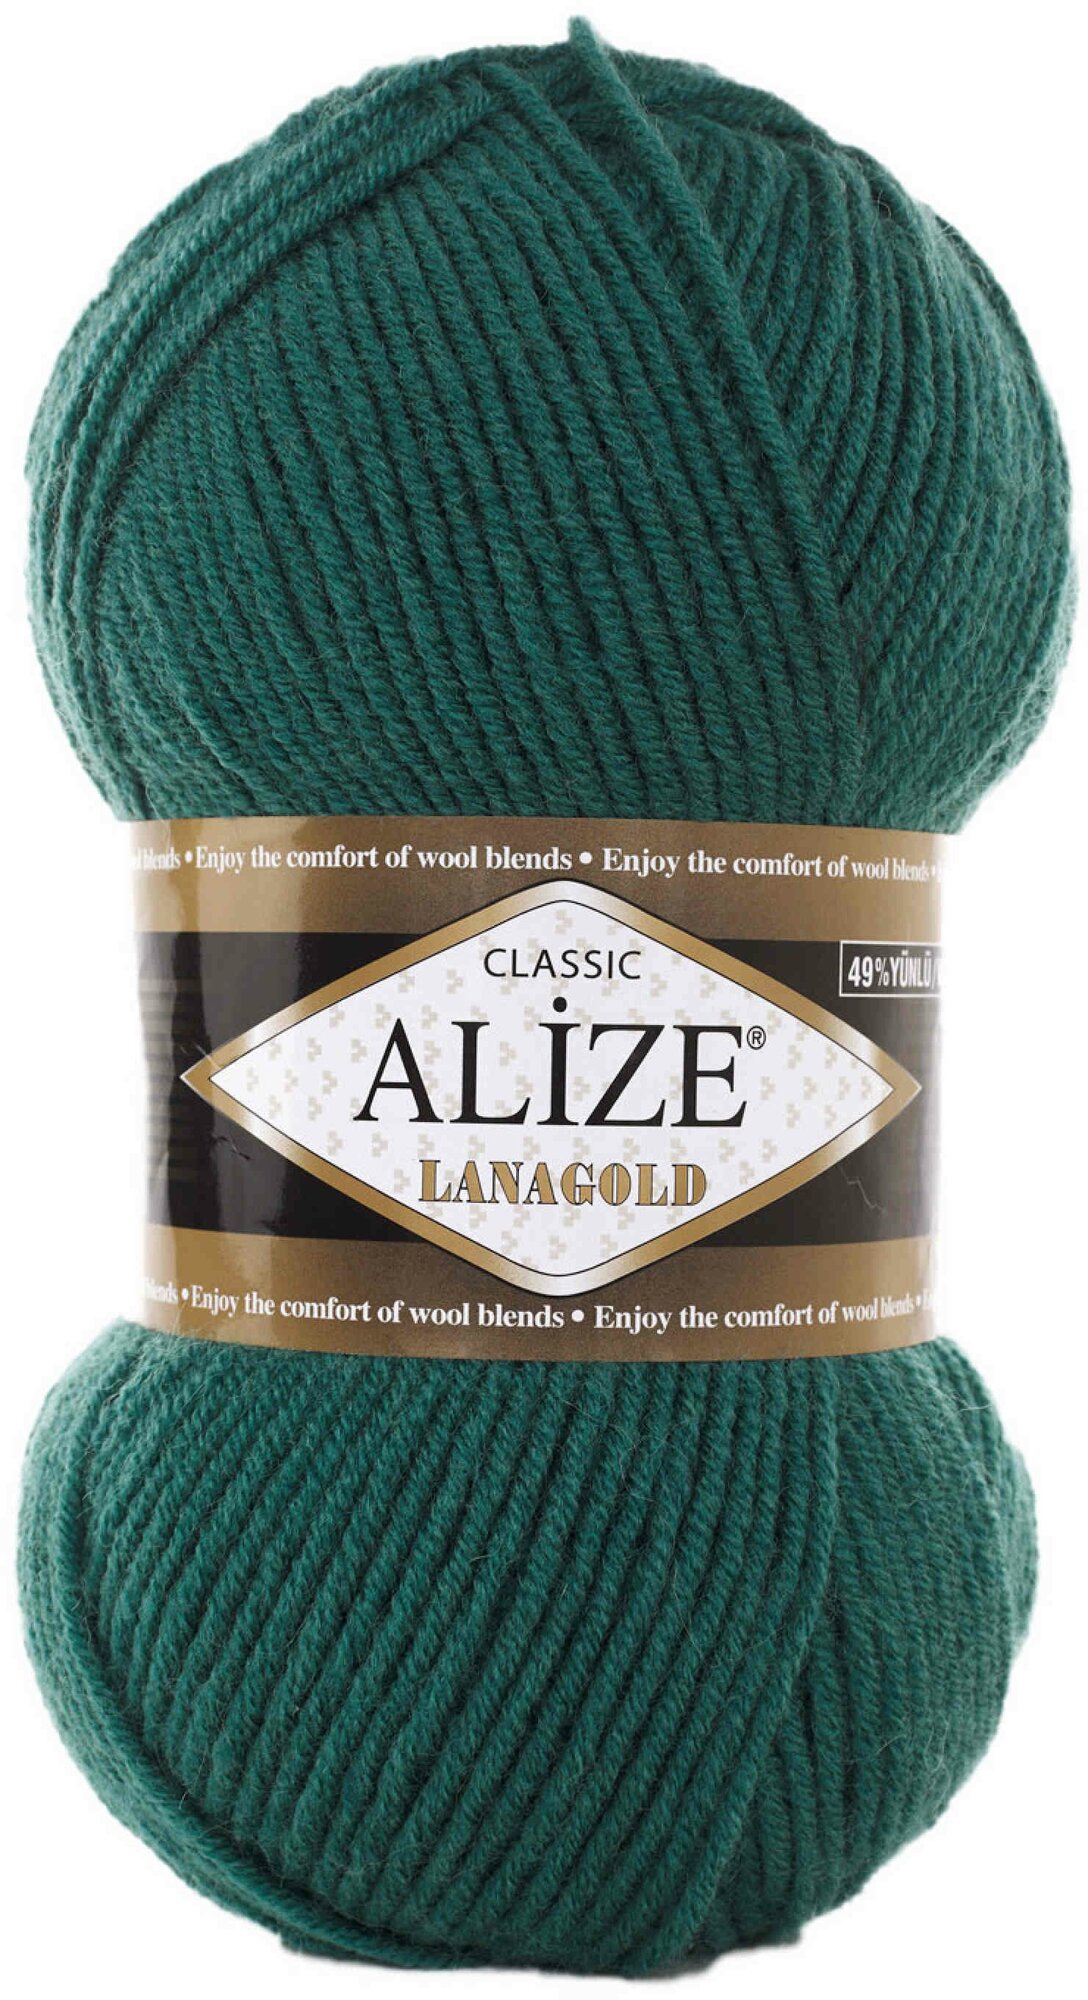 Пряжа Alize Lanagold античный зеленый (507), 51%акрил/49%шерсть, 240м, 100г, 5шт